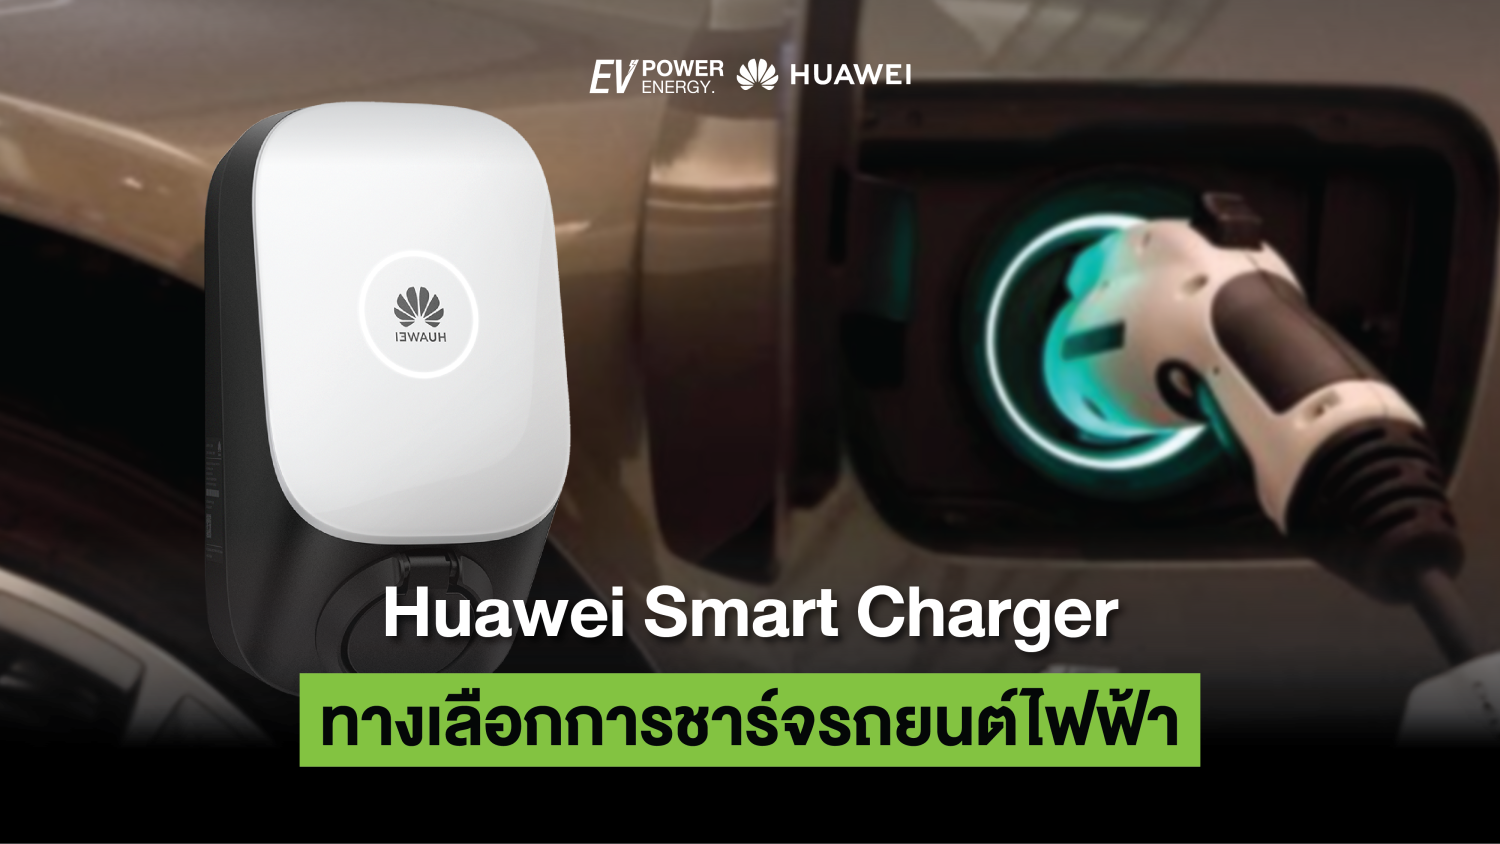 Huawei Smart Charger ทางเลือกการชาร์จรถยนต์ไฟฟ้า 1